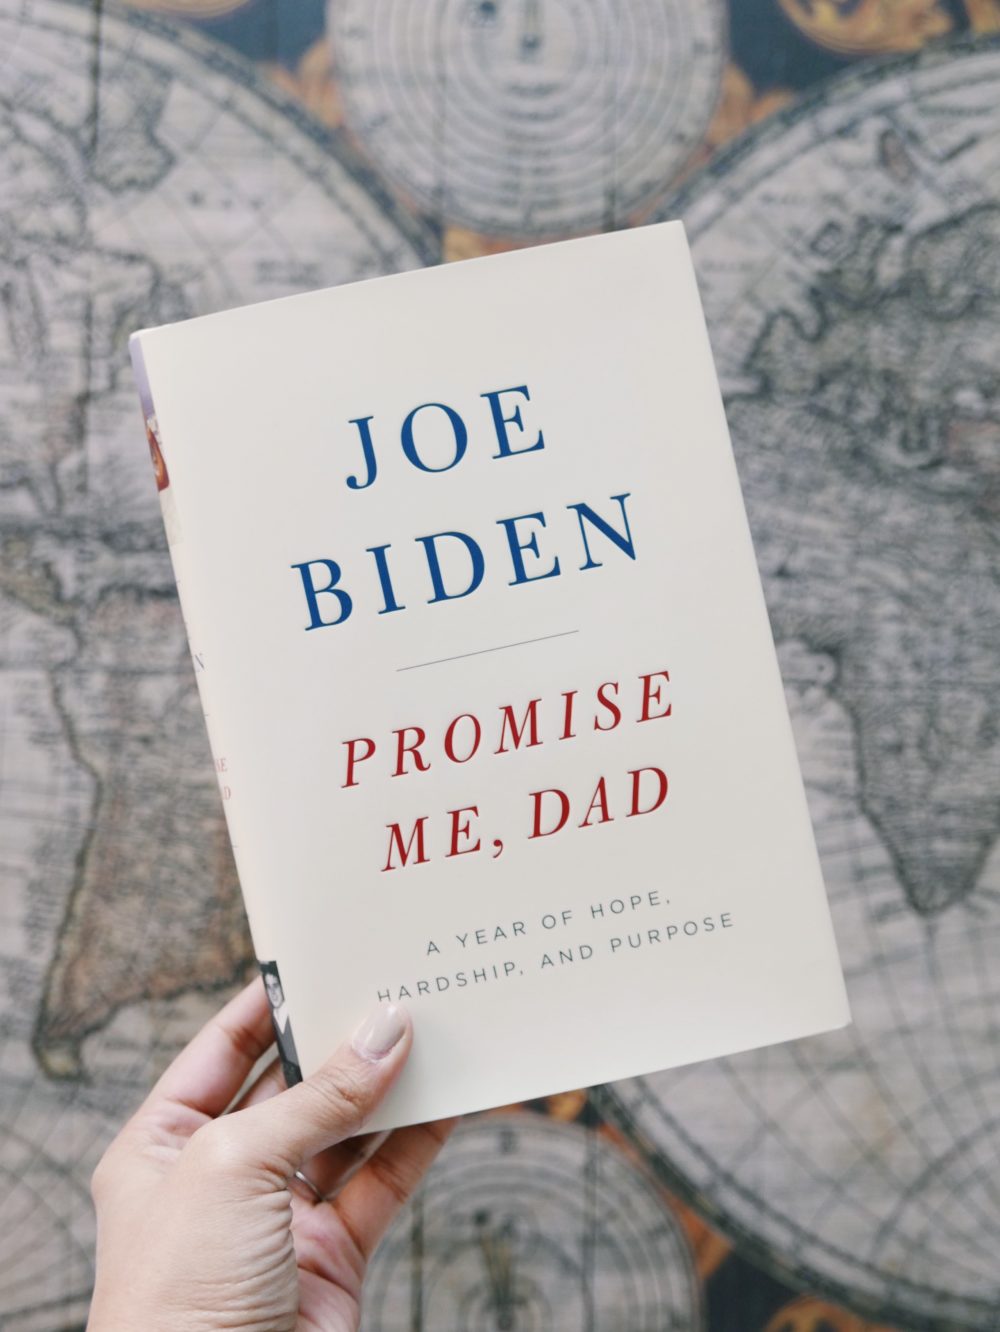 Joe Biden Book